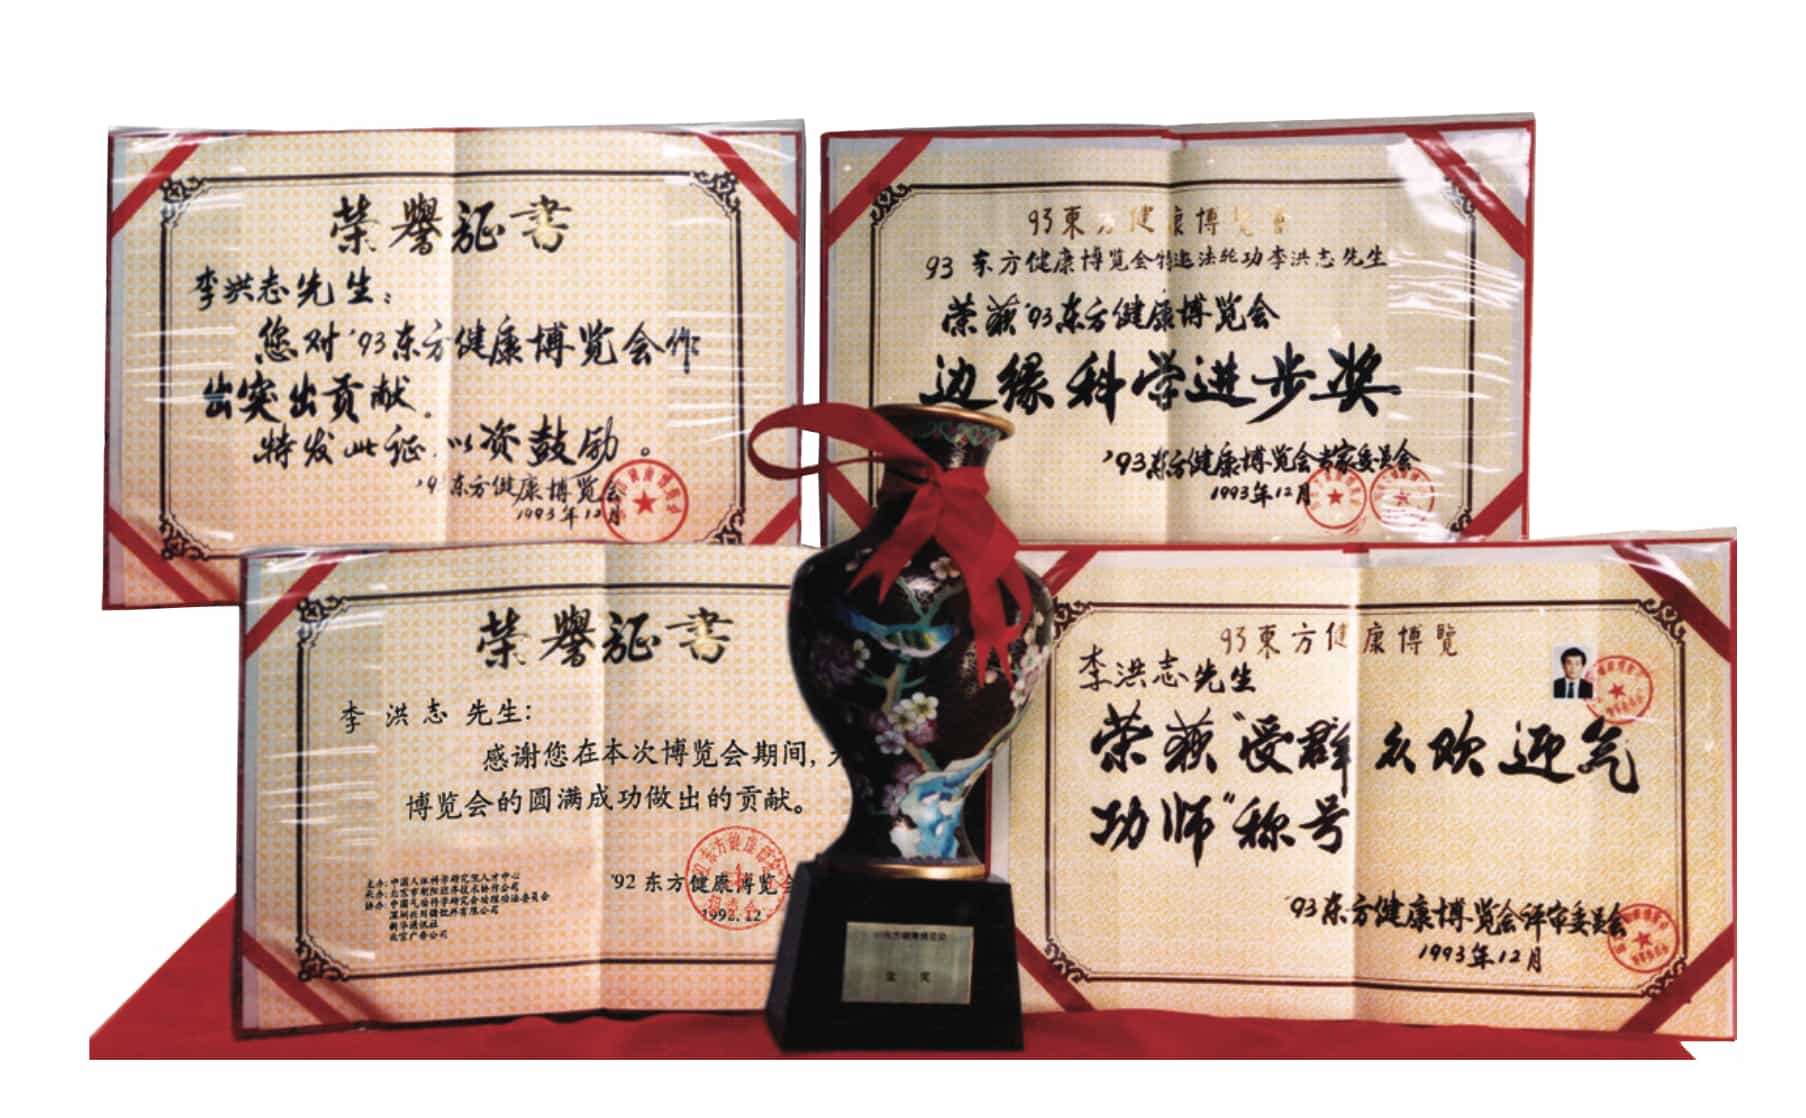 Các giải thưởng tại Trung Quốc và Quốc Tế “Giải thưởng Khoa học về Thúc đẩy sự tiến bộ” và “Giải Vàng đặc biệt” của Triển lãm Sức Khỏe Đông Phương Bắc Kinh năm 1993